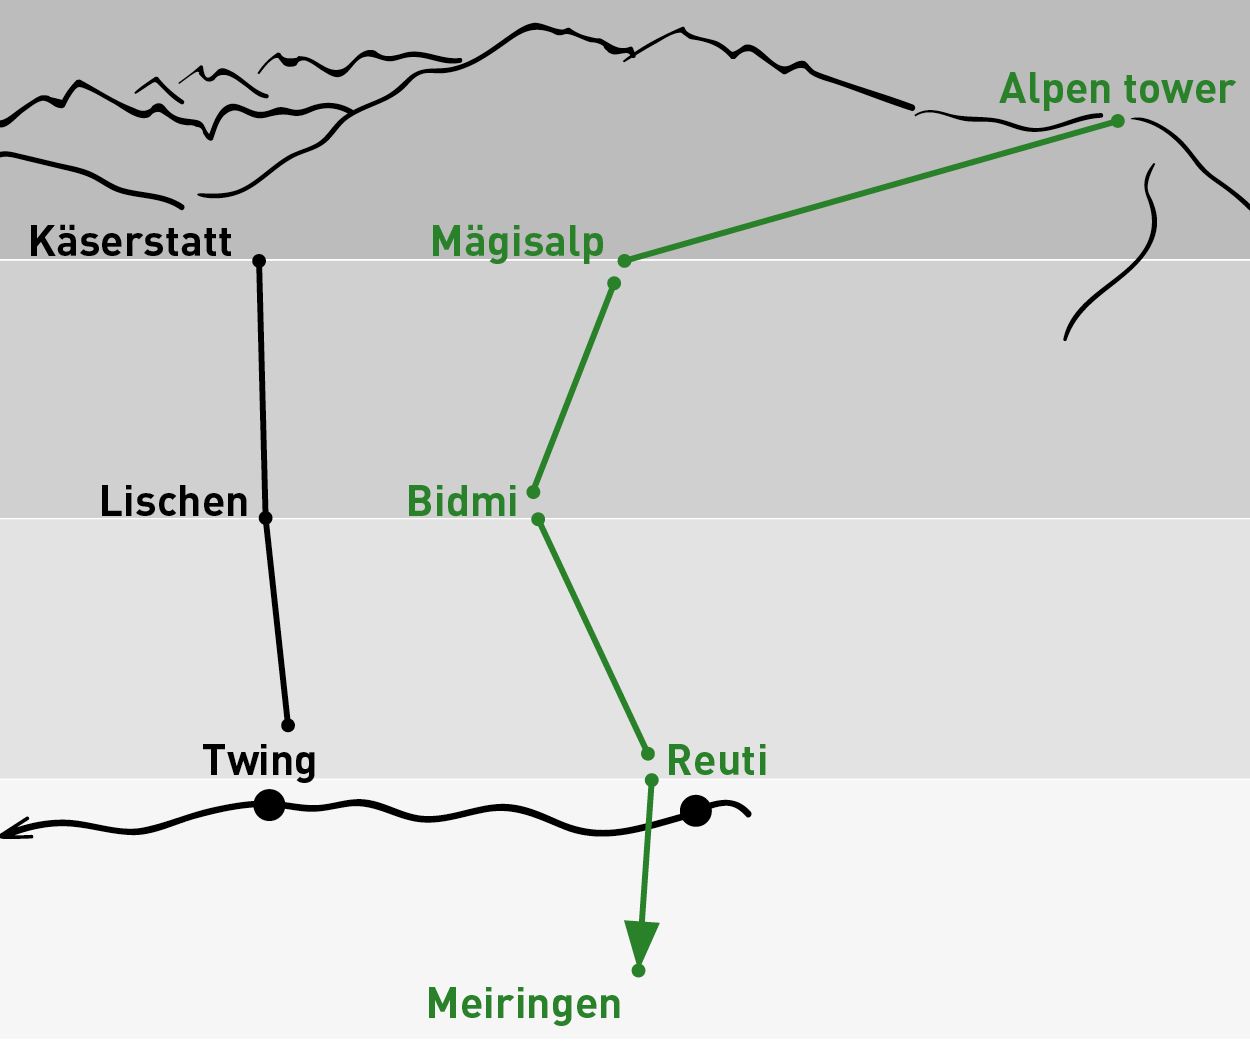 Alpen tower – Meiringen | Einfache Fahrt